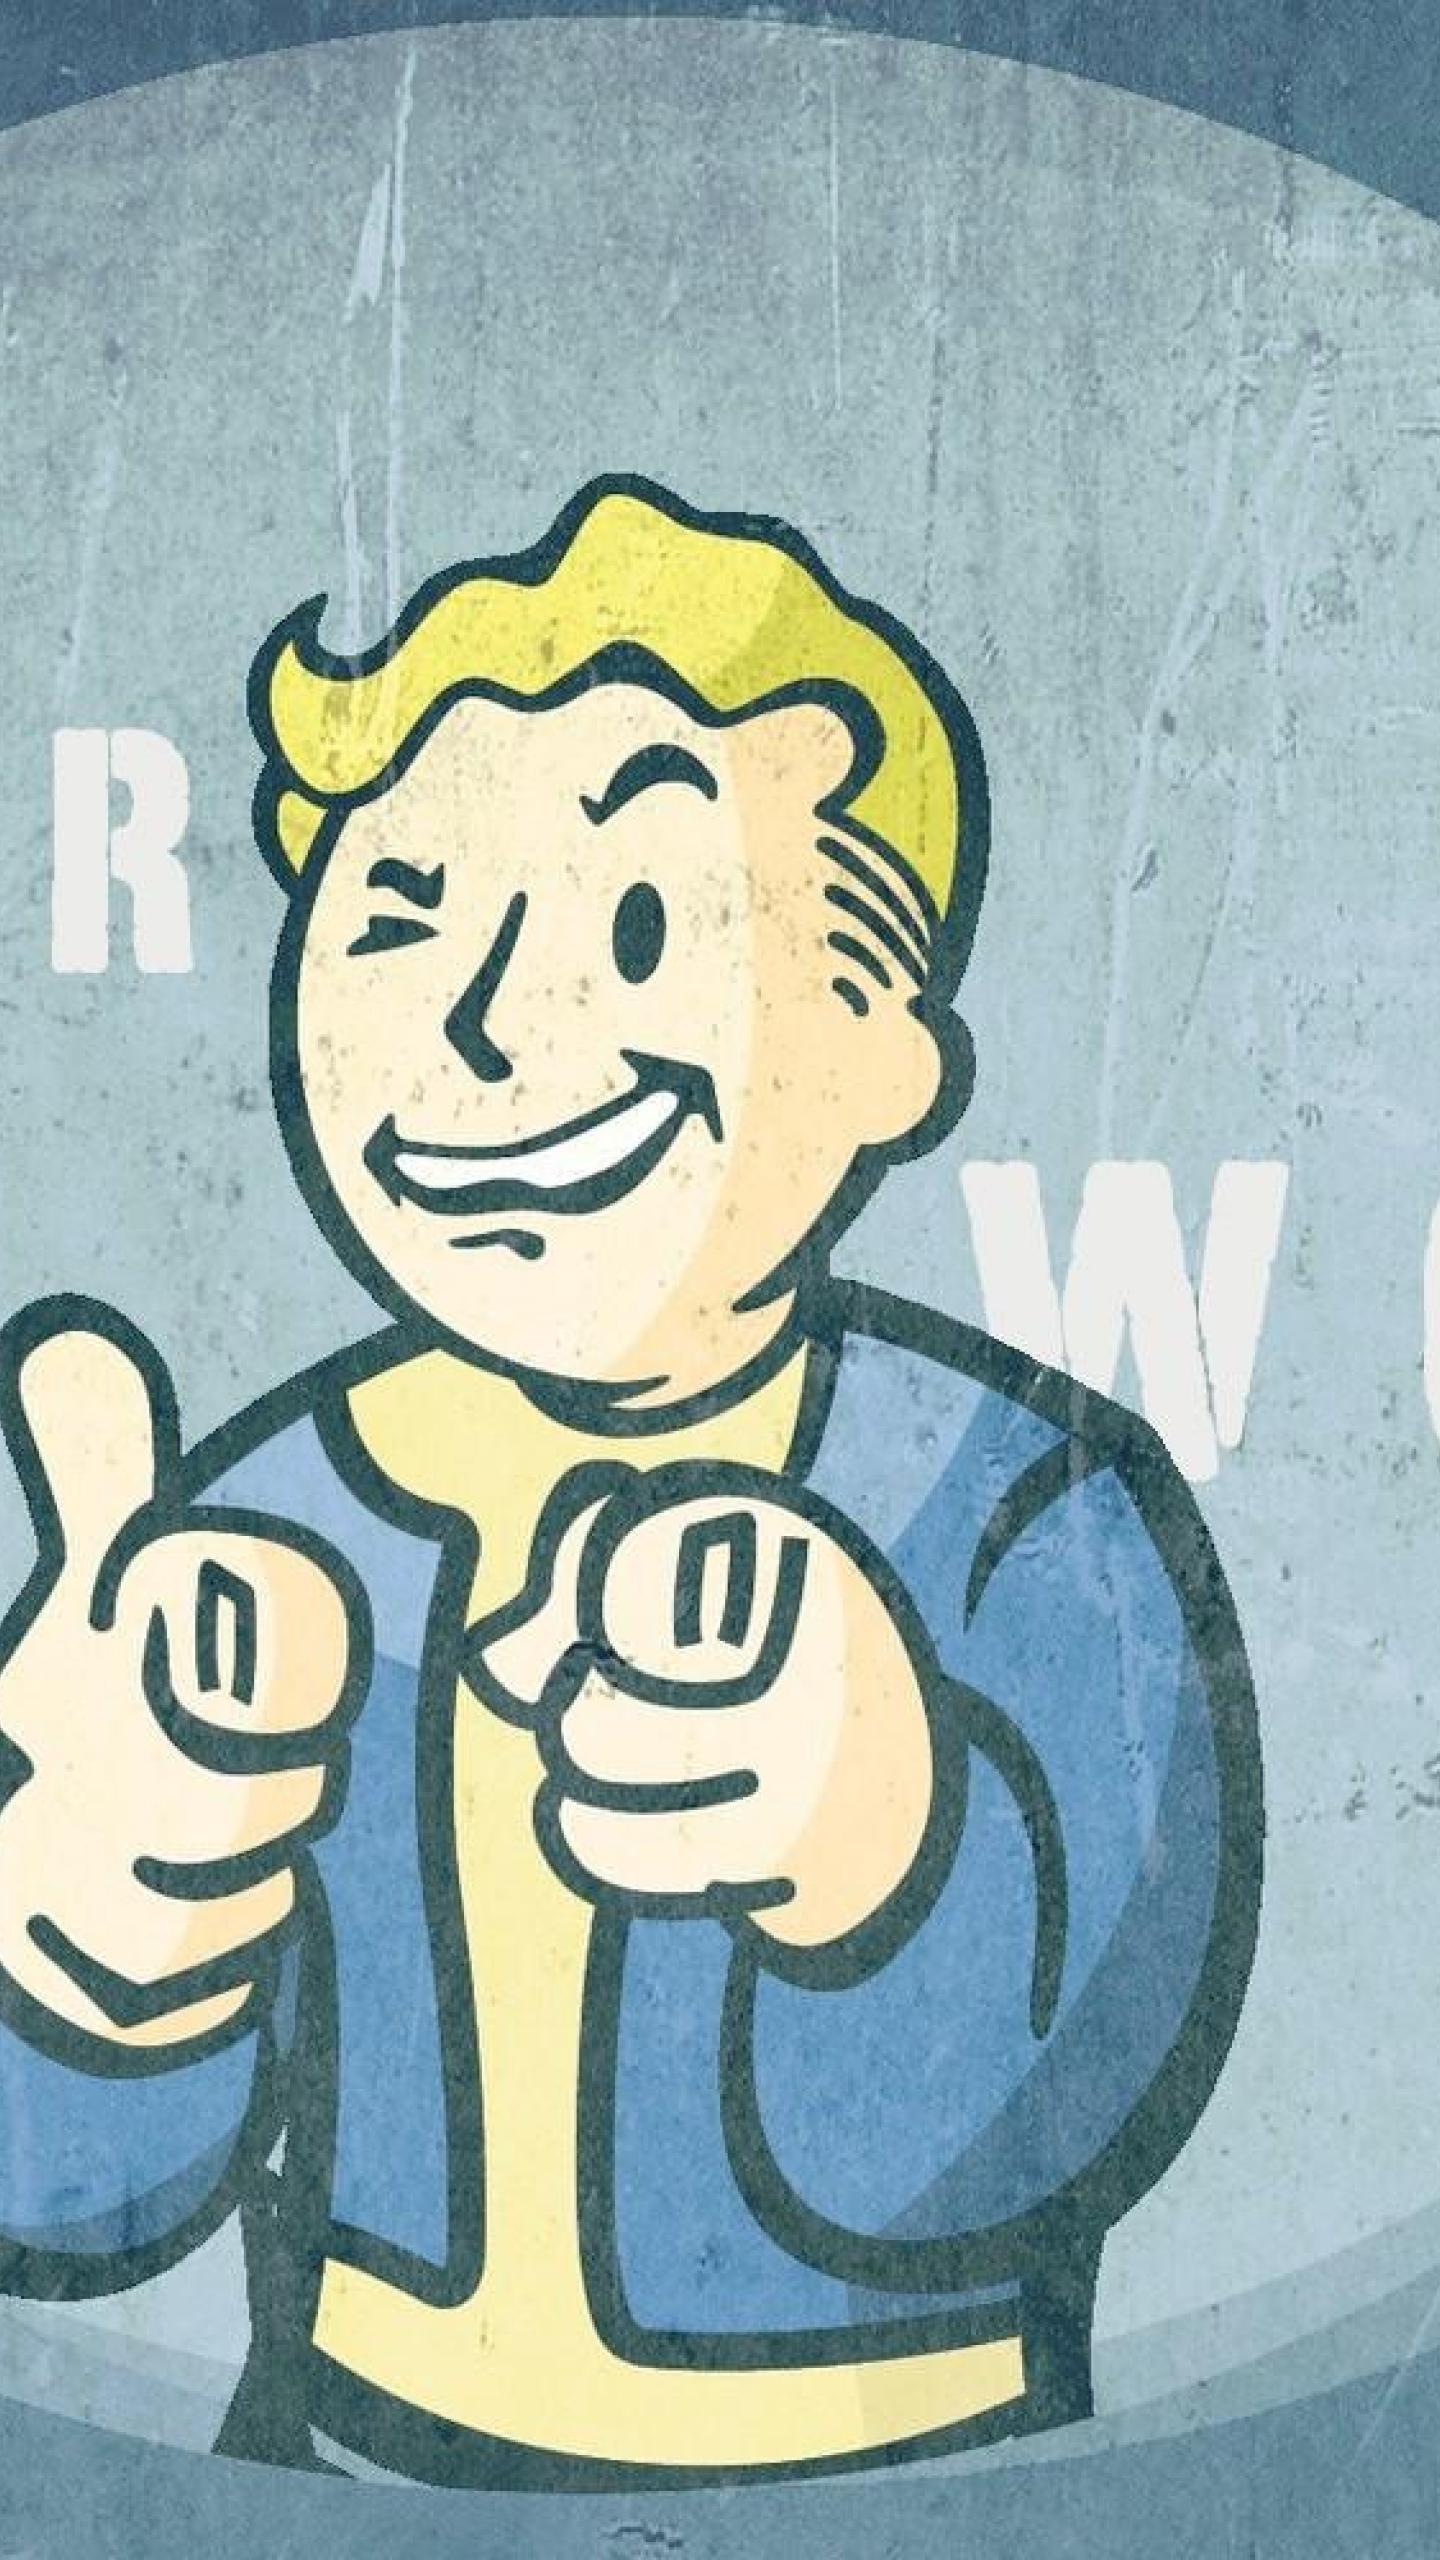 Vault boy Pipboy Fallout 3 HD Wallpapers, Desktop Backgrounds